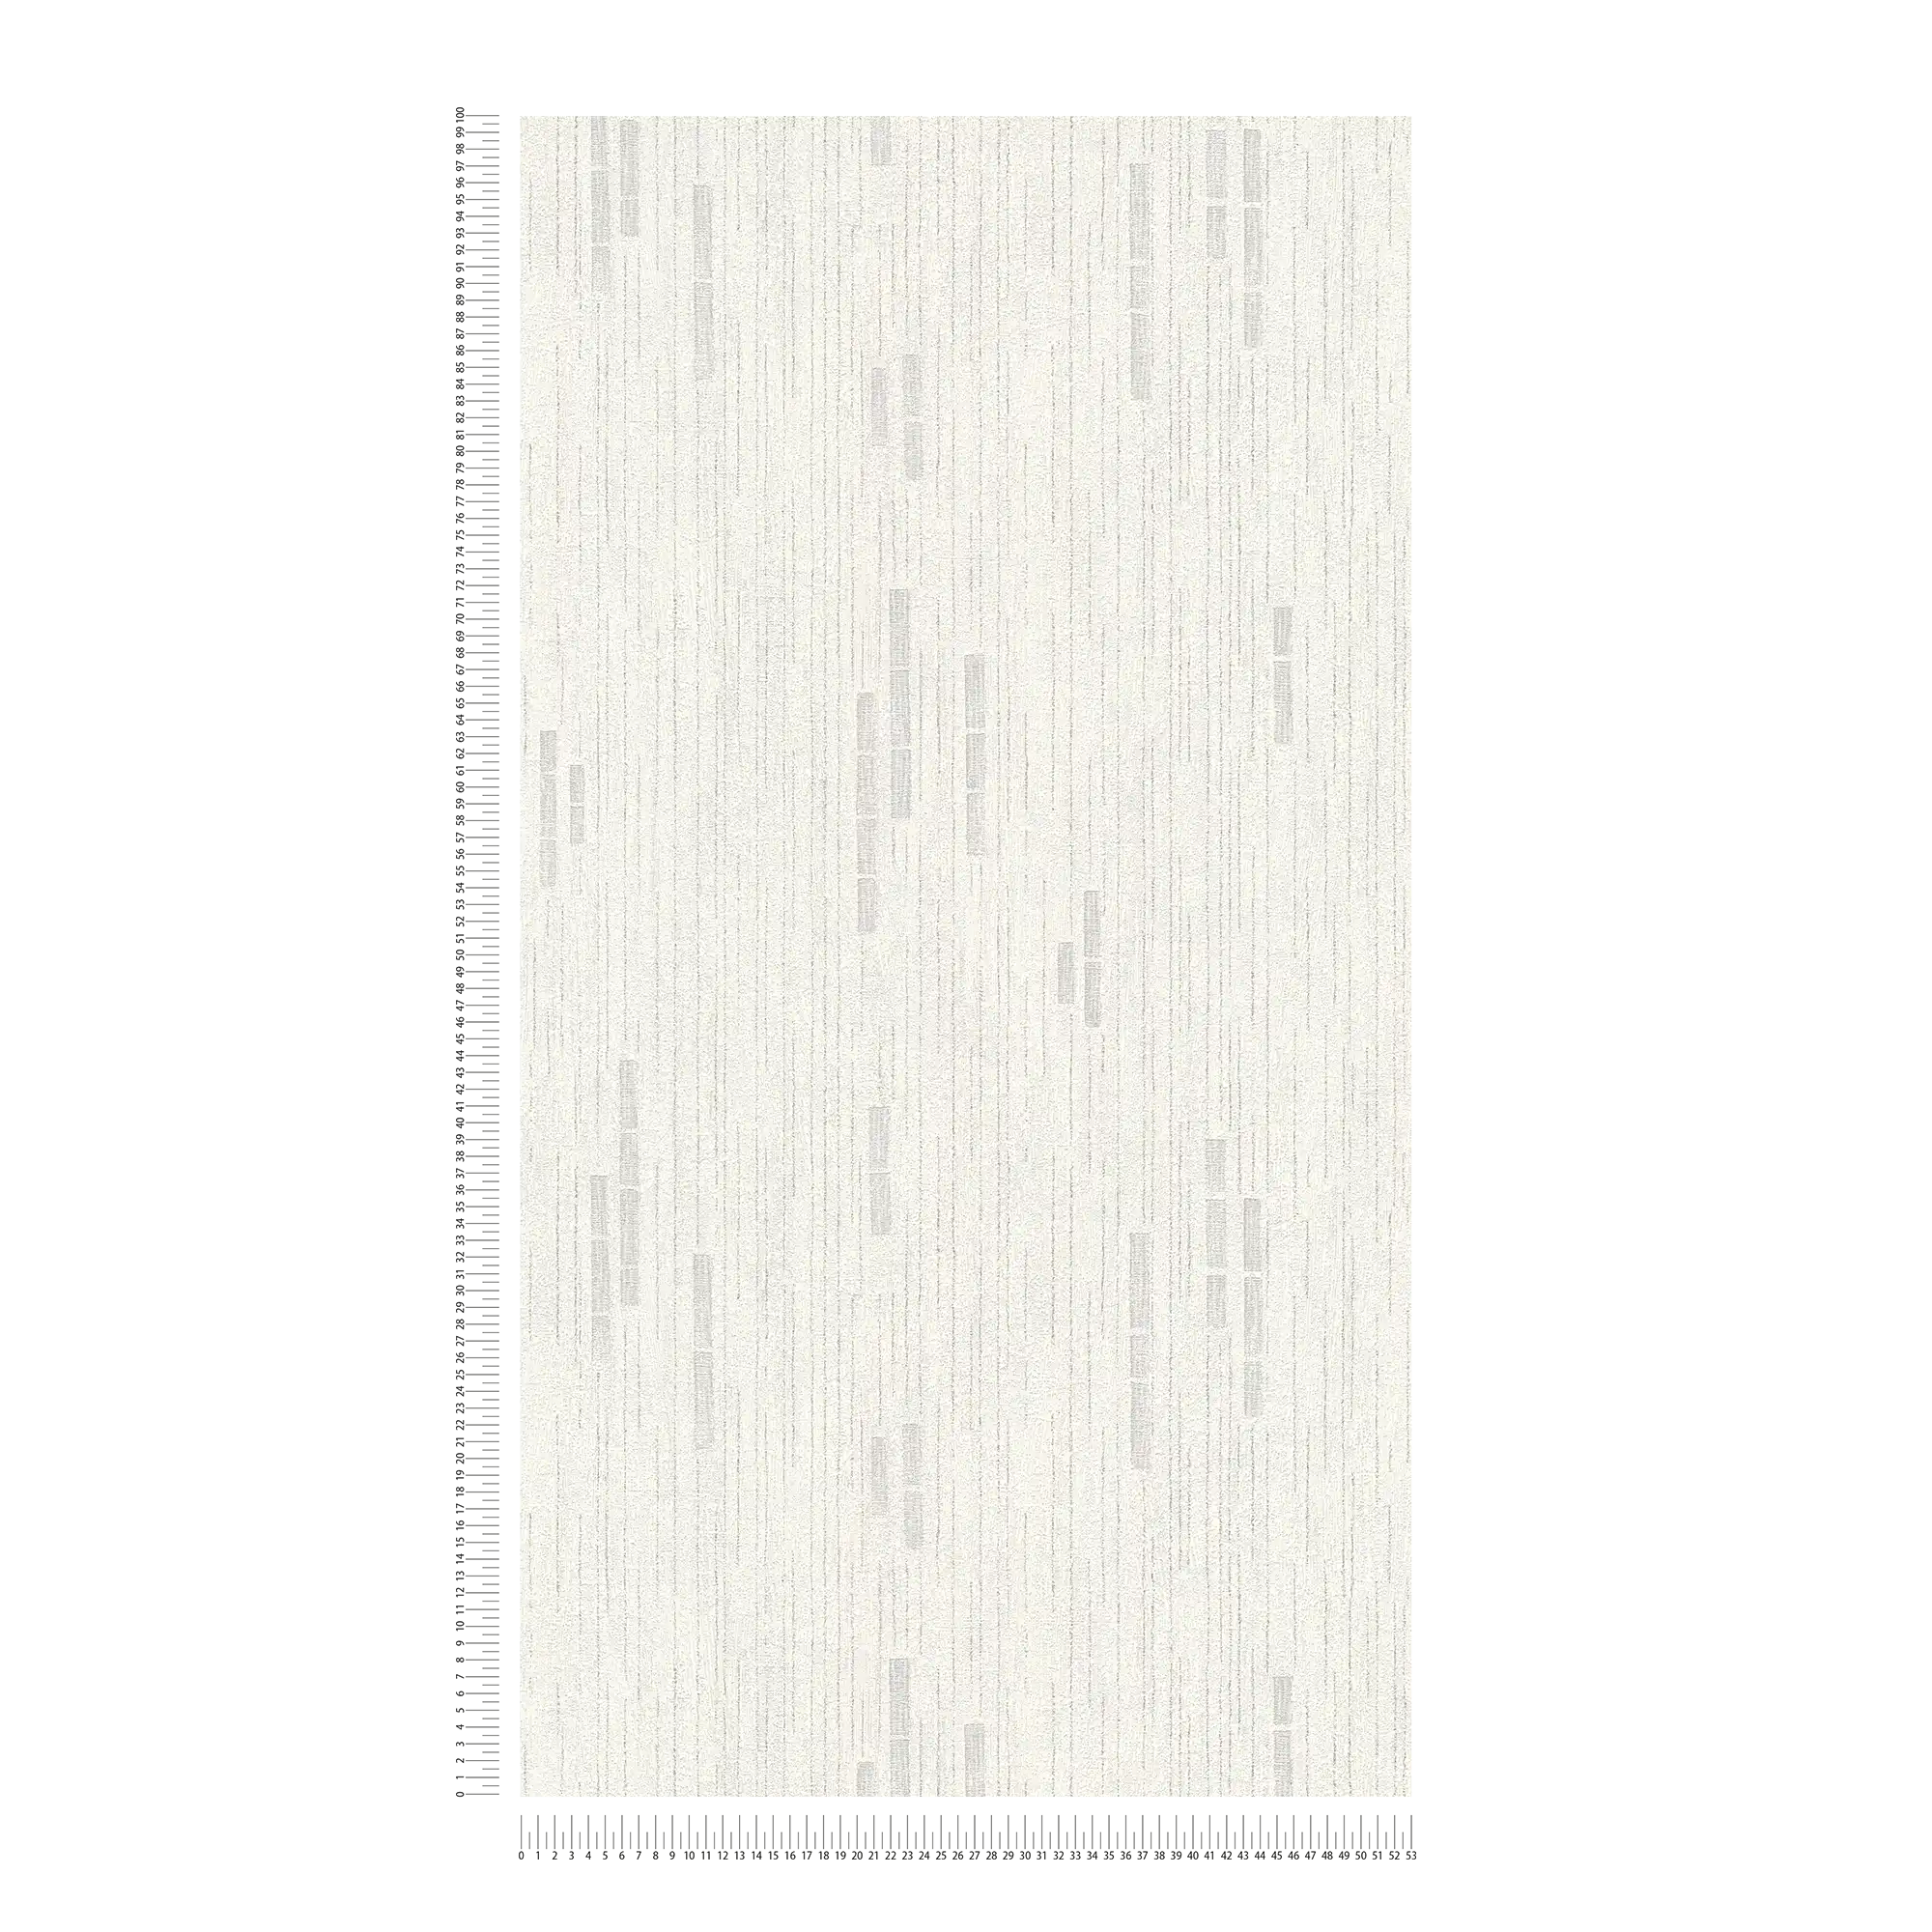             Carta da parati retrò con tessuto non tessuto testurizzato e design sottile - grigio, metallizzato, bianco
        